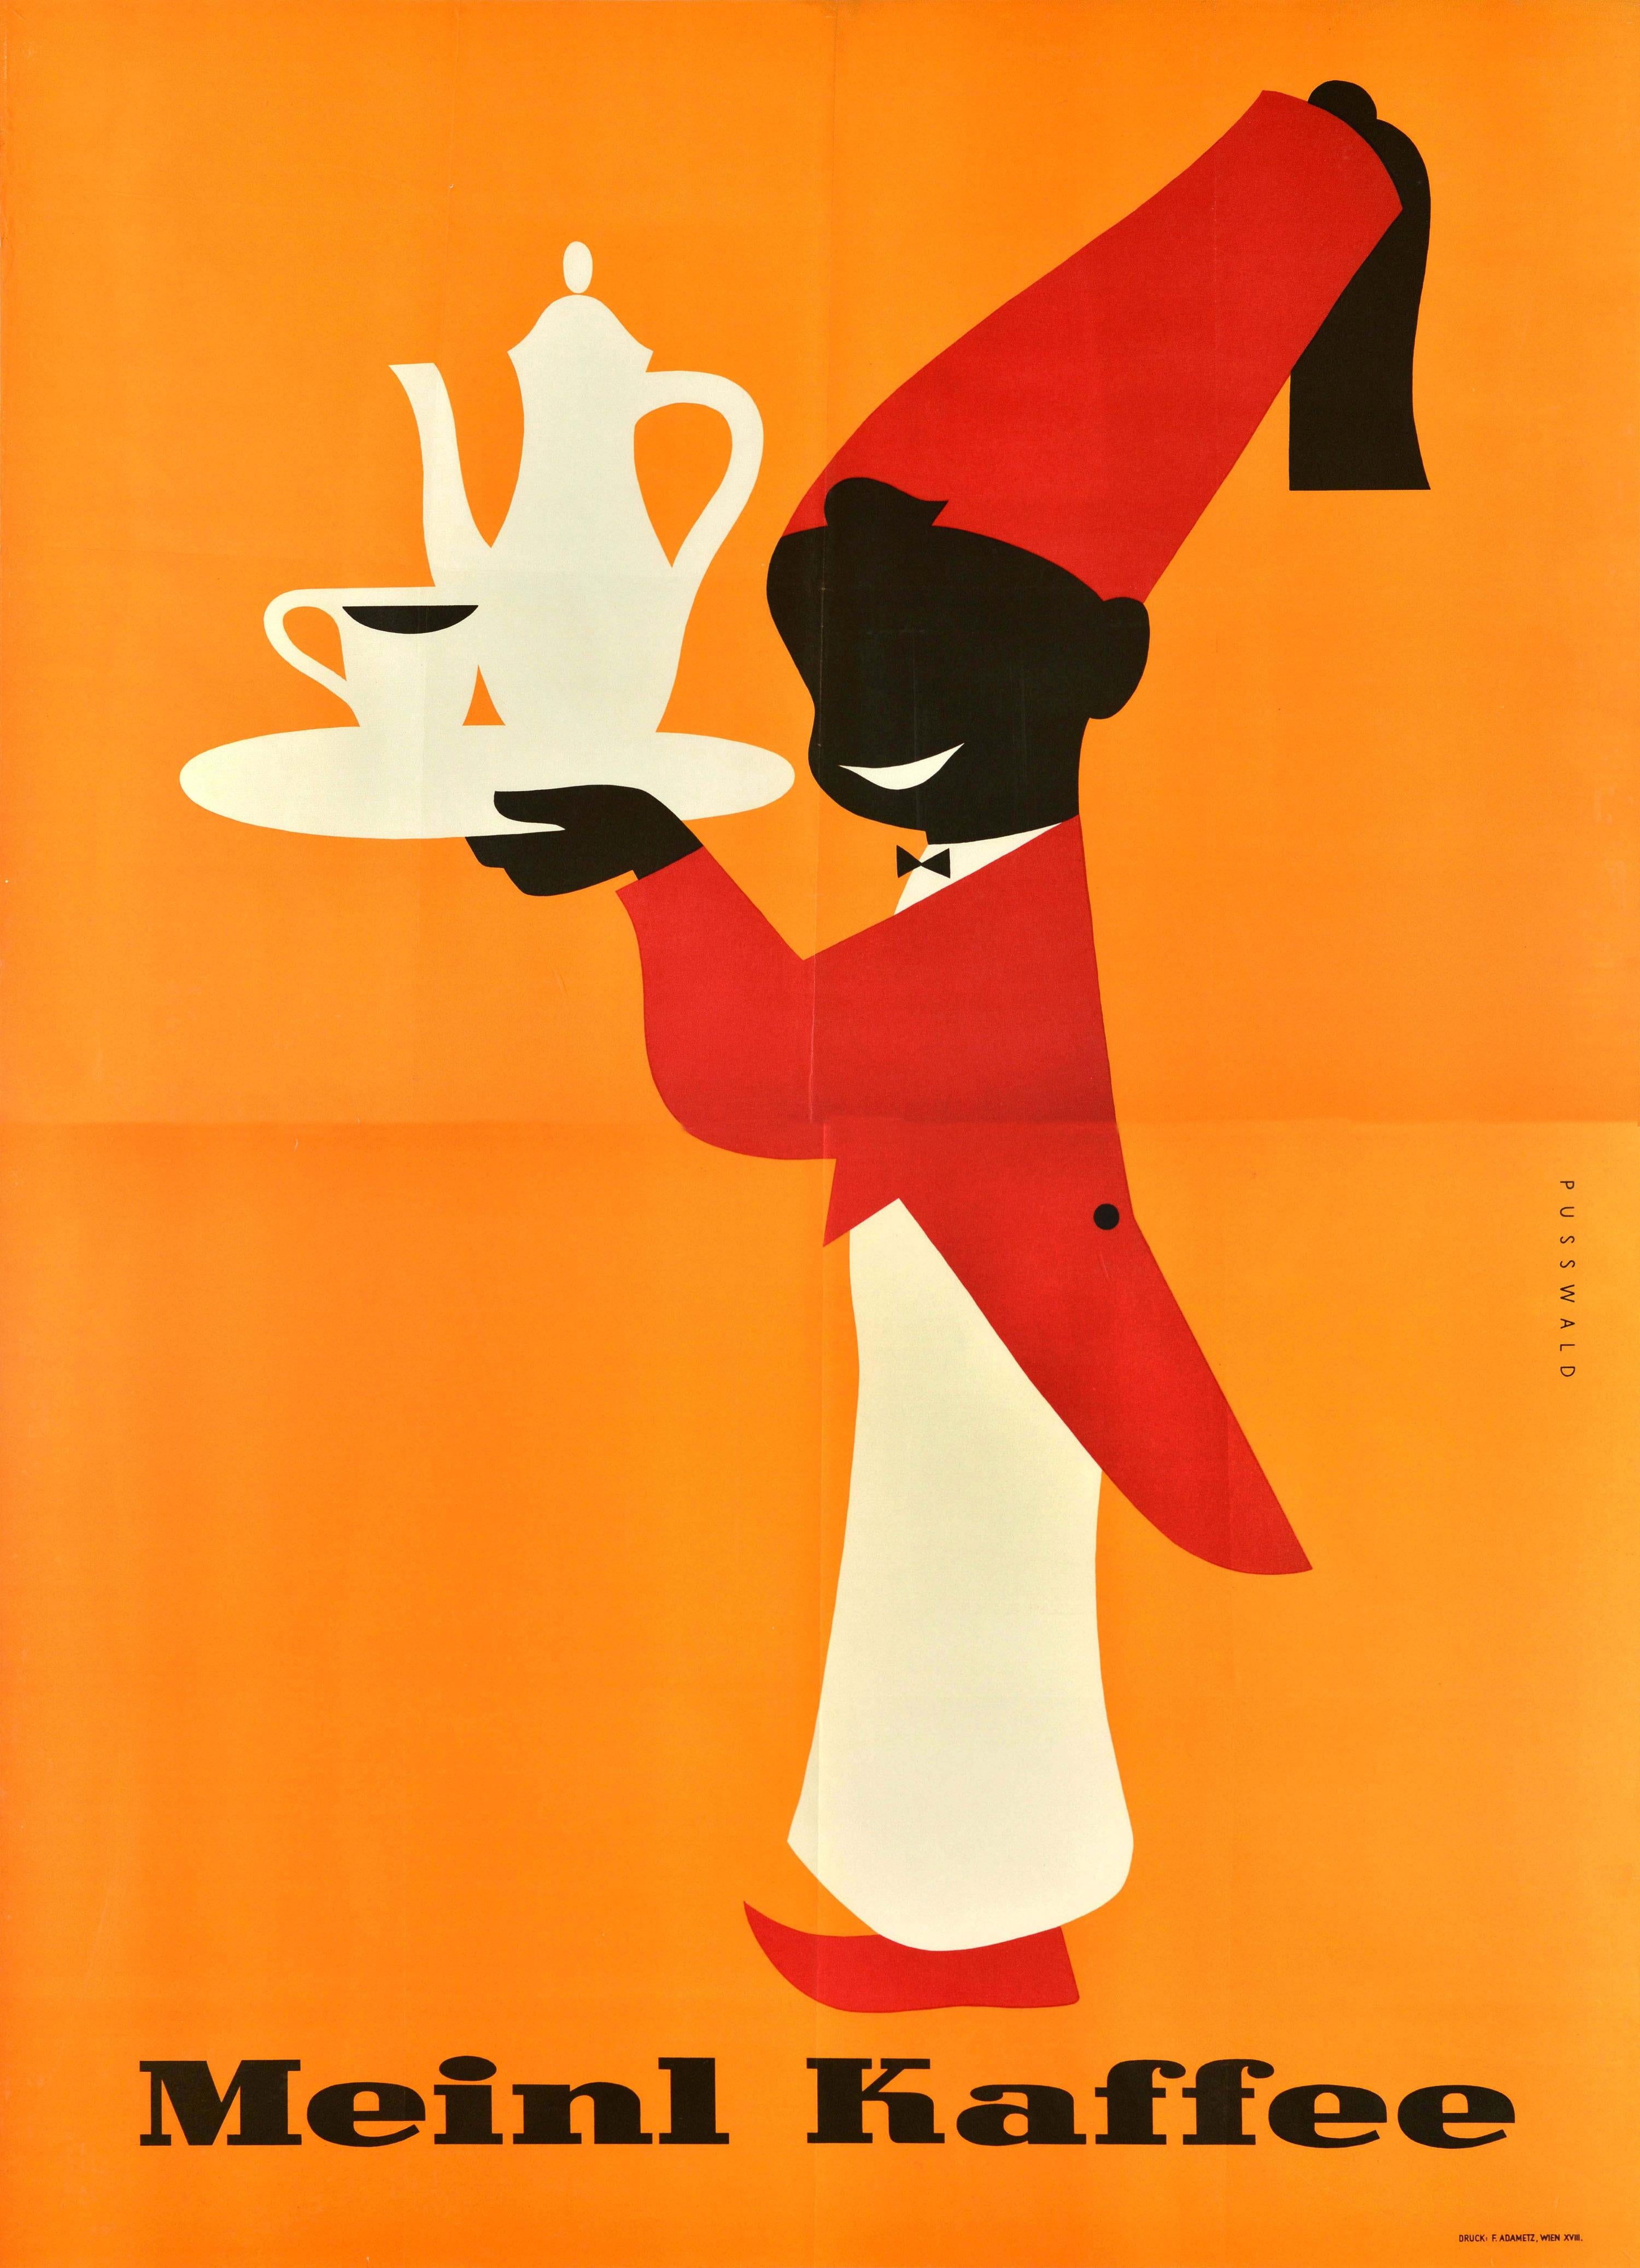 Unknown Print - Original Vintage Drink Advertising Poster Meinl Kaffee Coffee Fez Hat Design Art